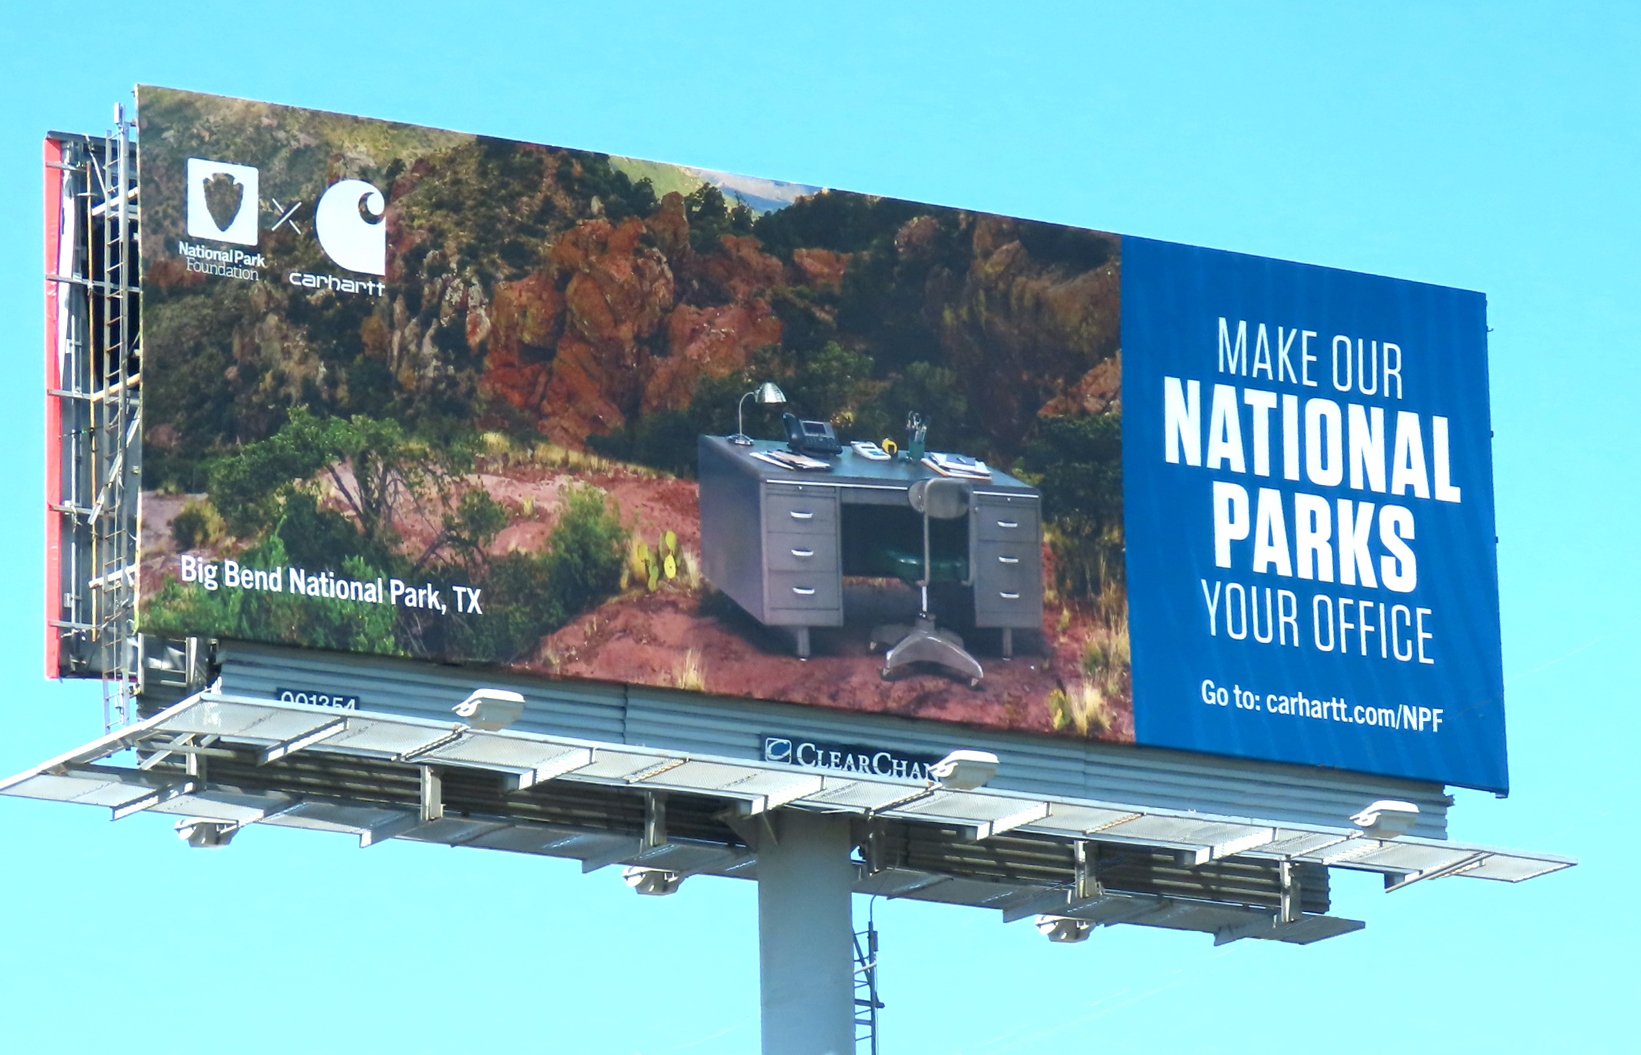 Carhartt National Parks Billboard Advertising Project X PJX Media+2.jpg